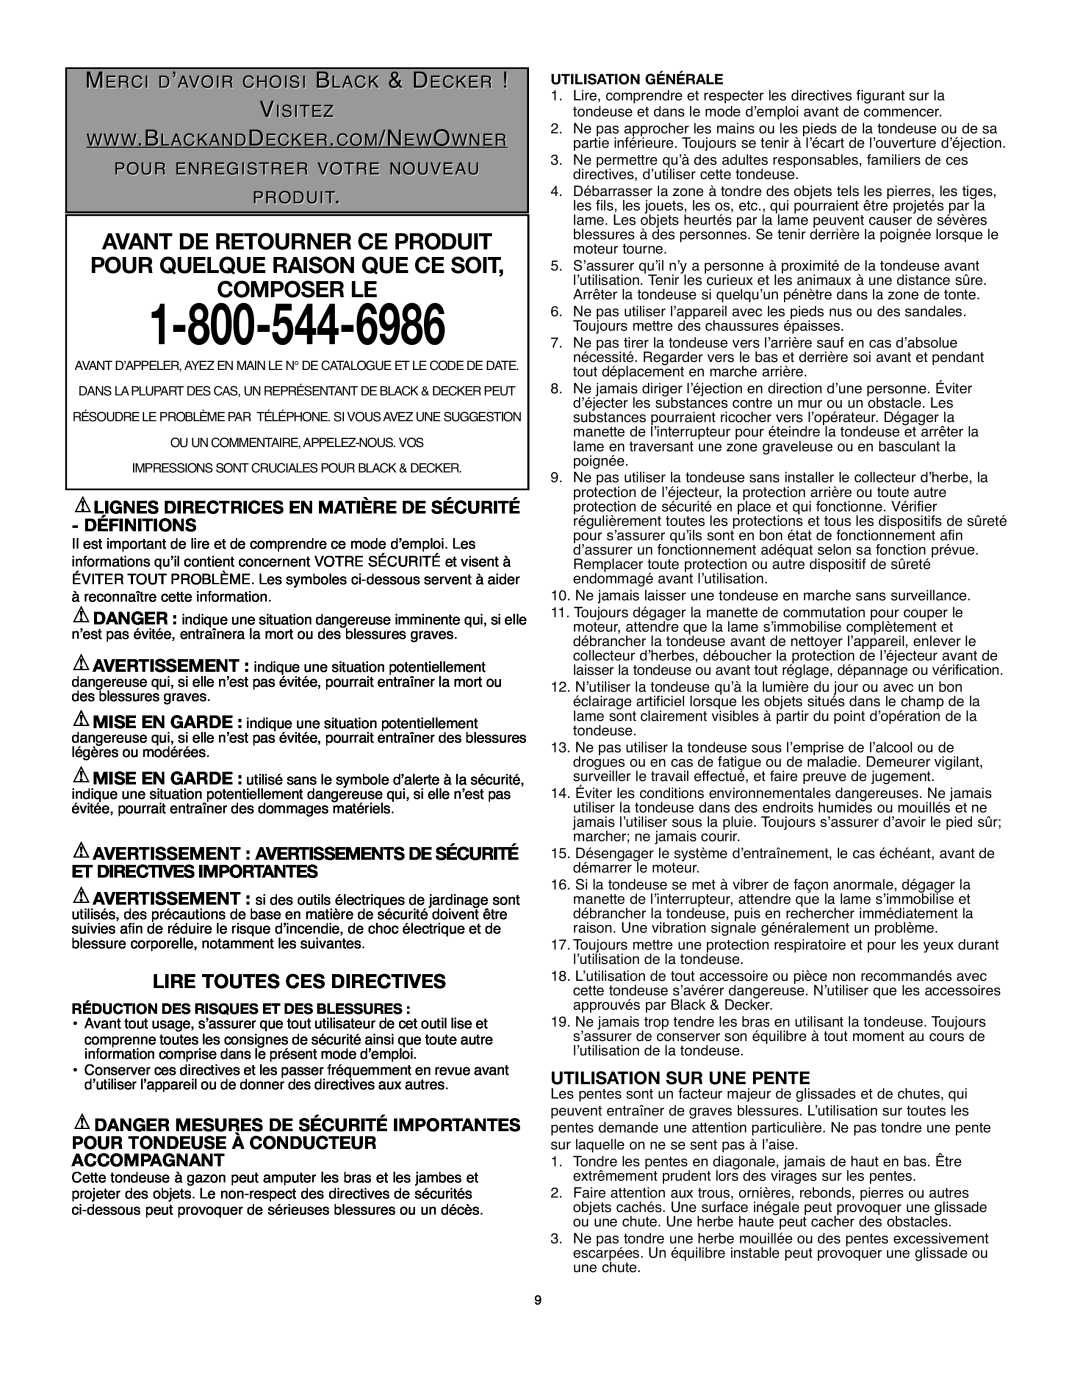 Black & Decker LM175 instruction manual Lire Toutes Ces Directives, Utilisation Sur Une Pente 